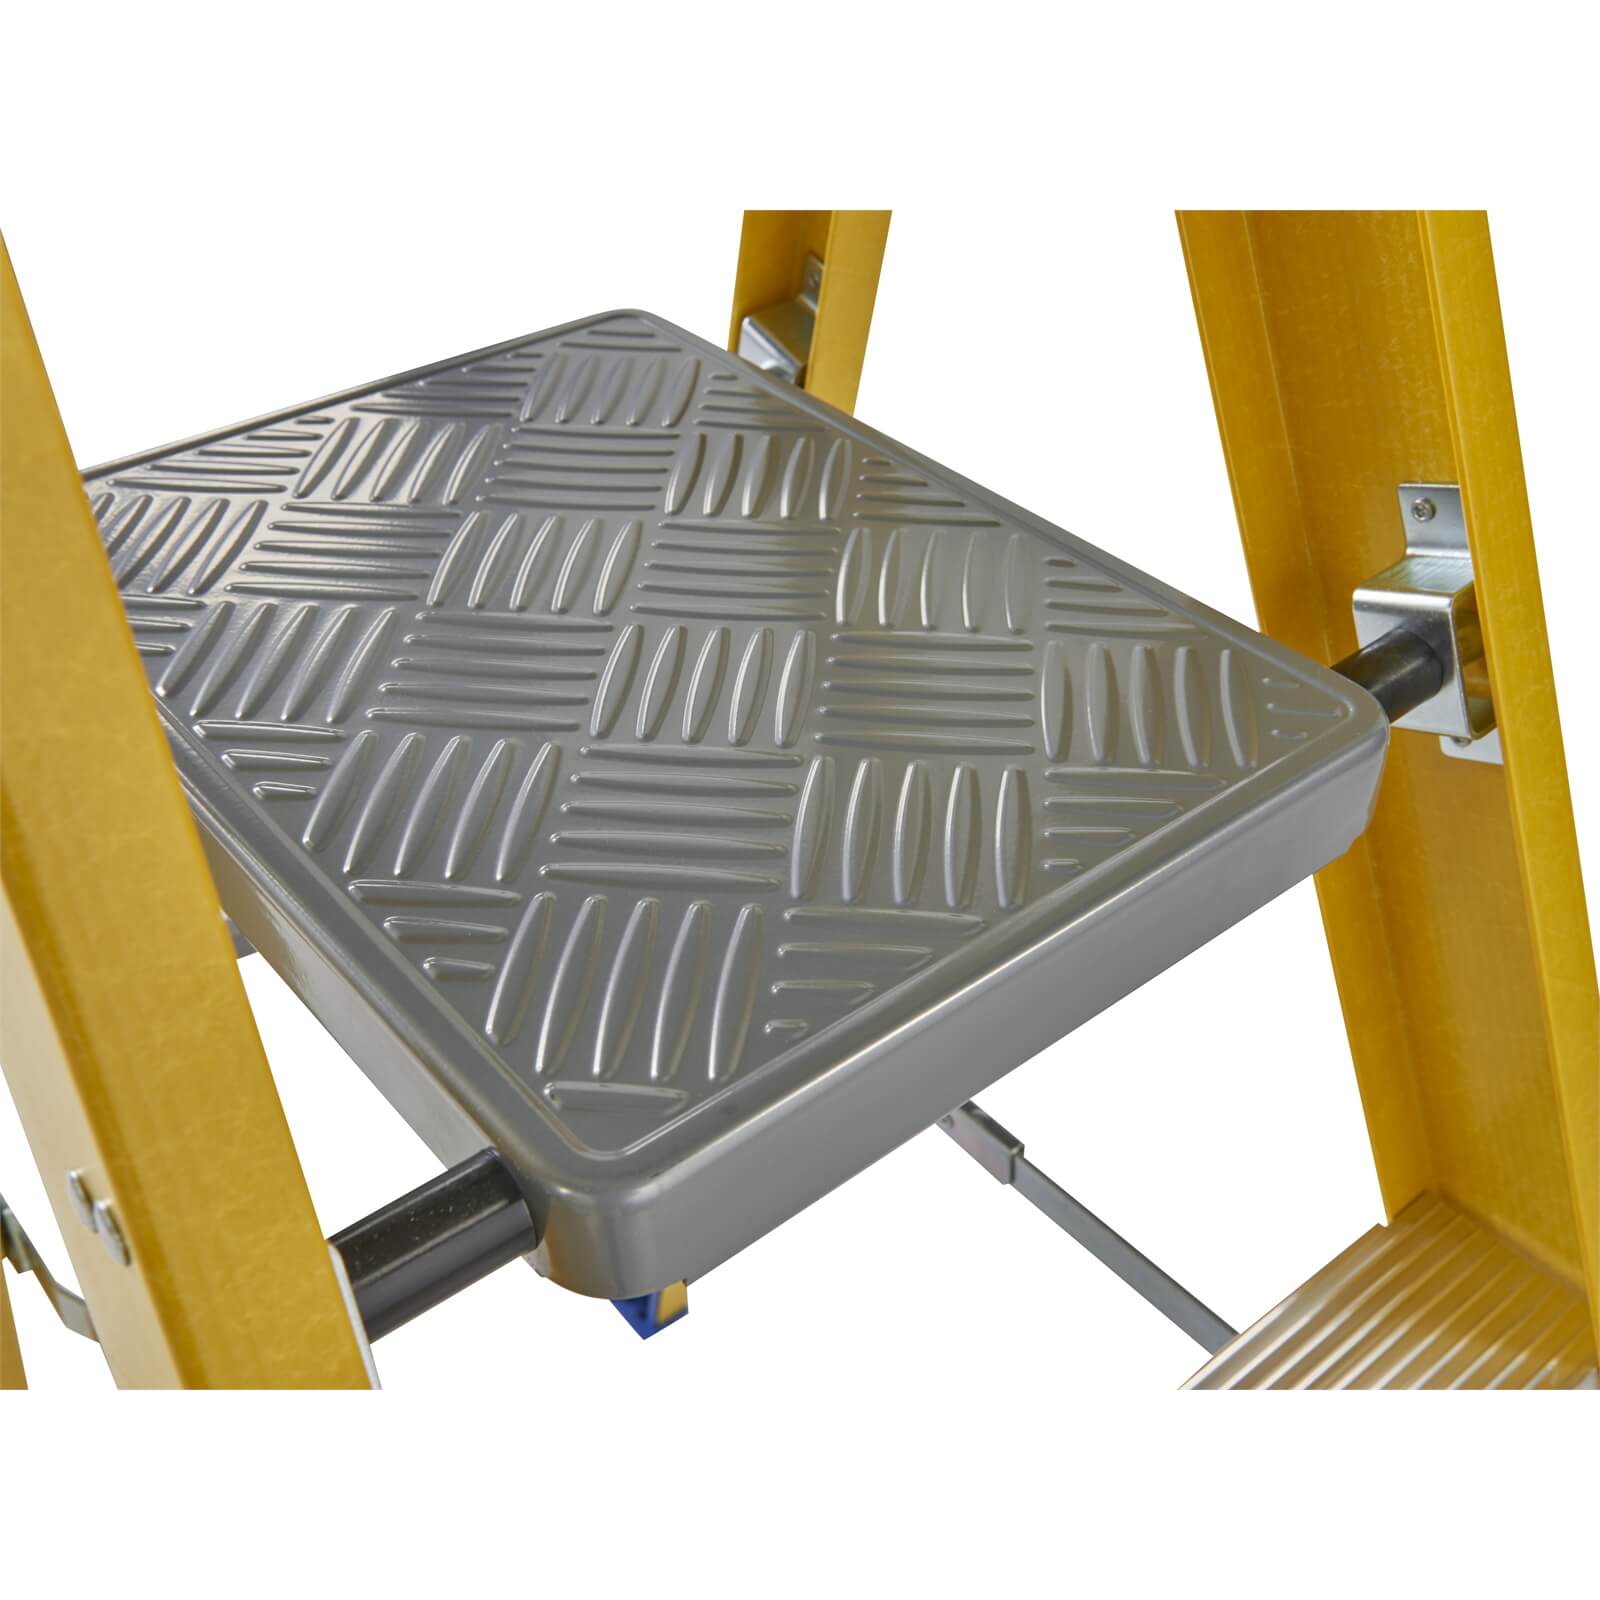 Werner Fibreglass Platform Step Ladder - 4 Tread